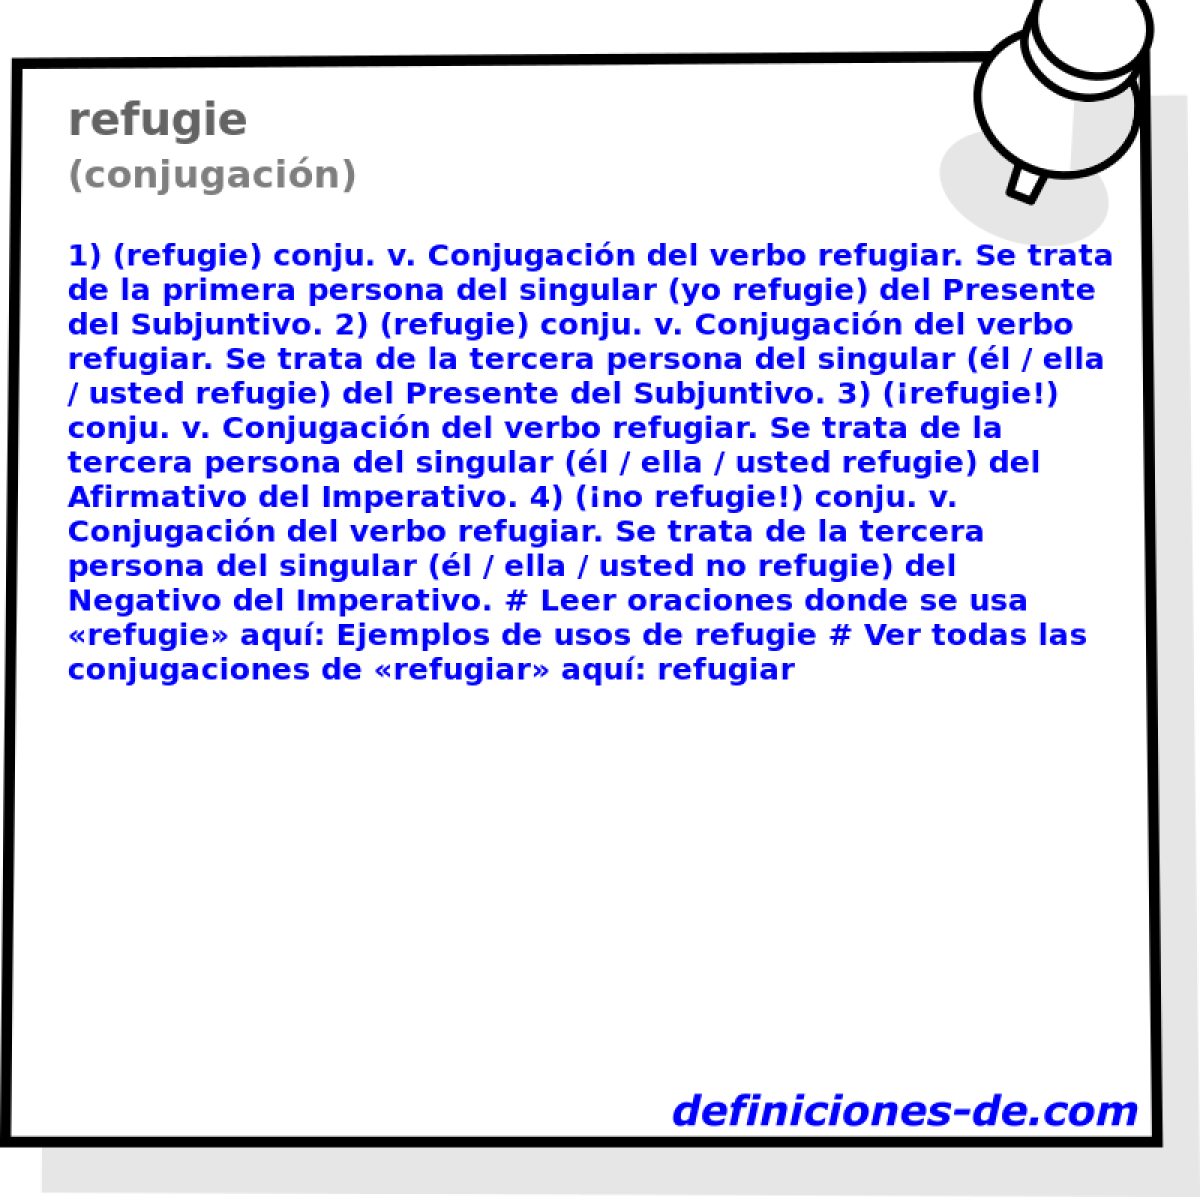 refugie (conjugacin)